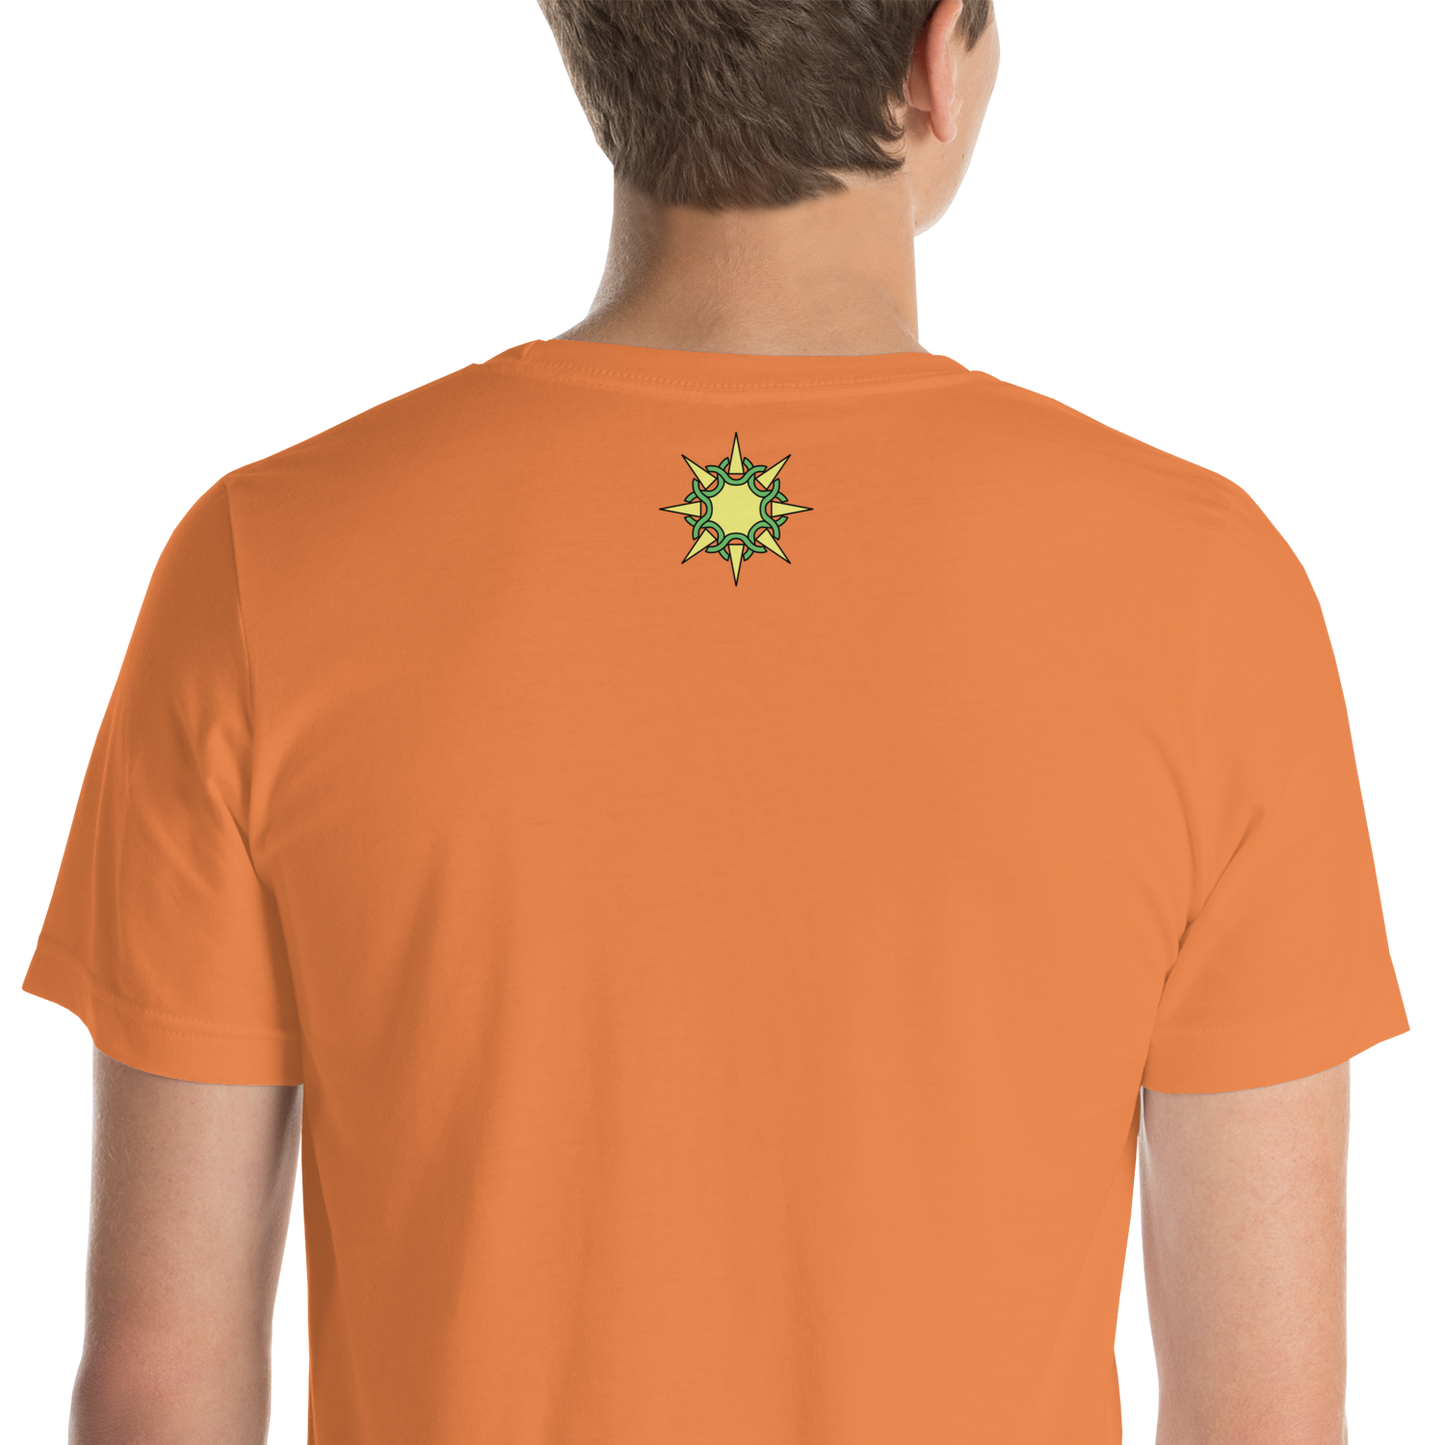 Stunshine Gorilla Tag - Burnt Orange Unisex Short Sleeve T-shirt